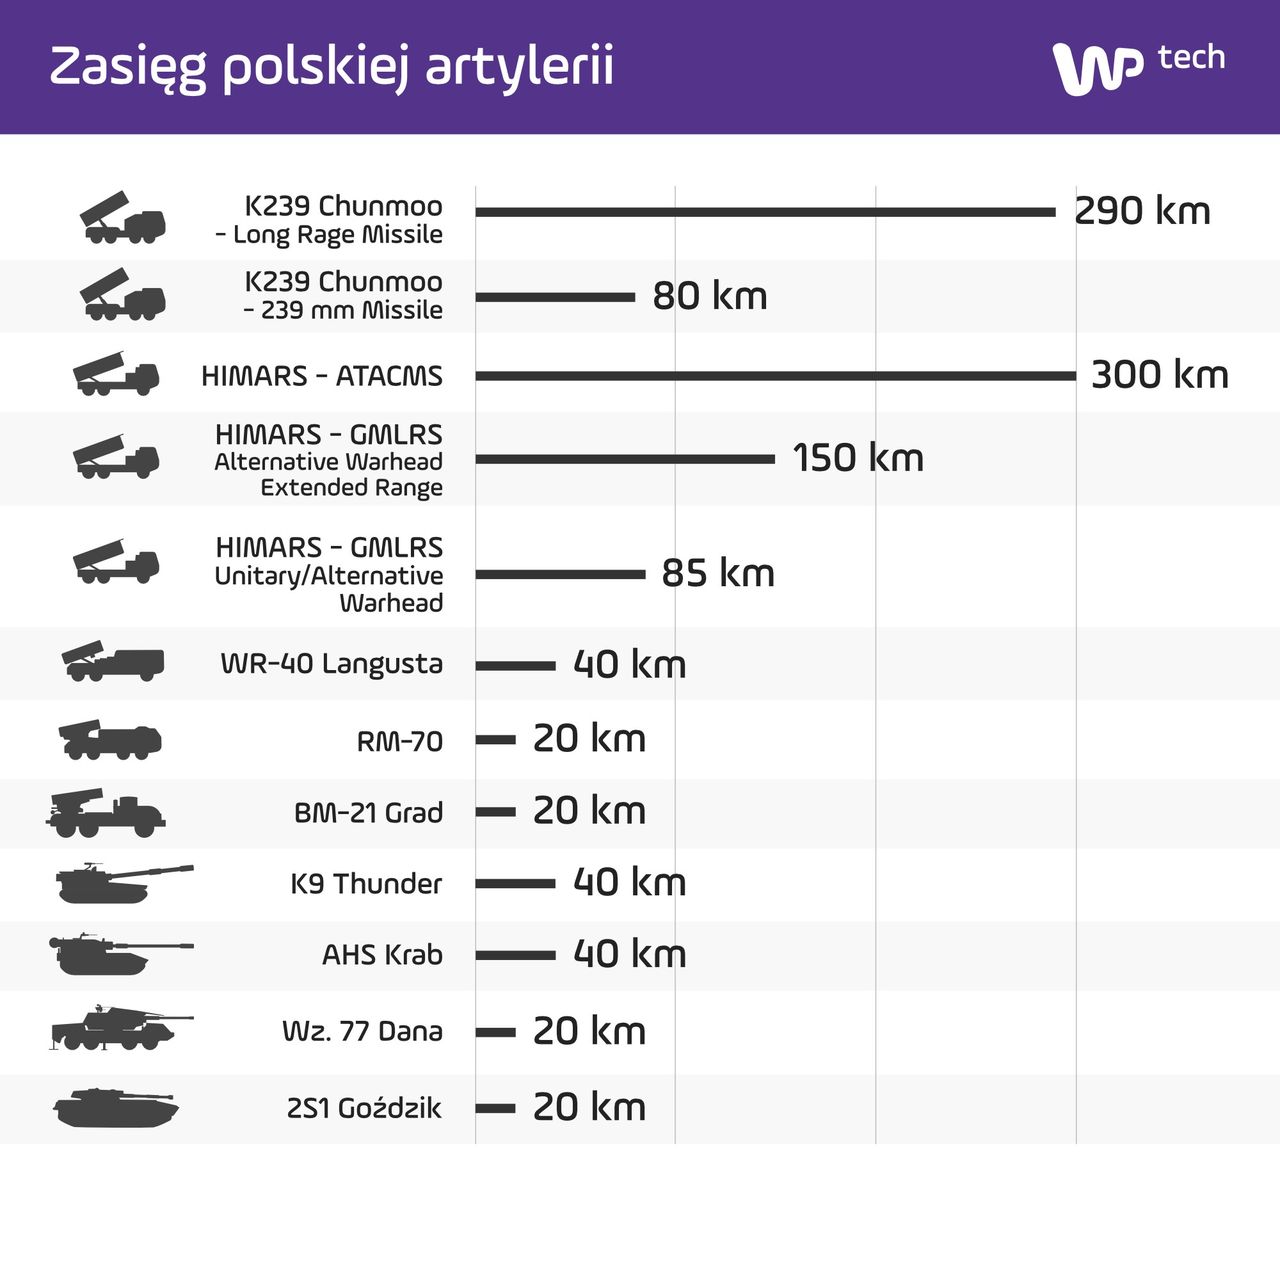 Zasięg ognia polskiej artylerii - modele użytkowane i planowane do dostarczenia w 2020 r. (kliknij w obrazek, aby powiększyć)